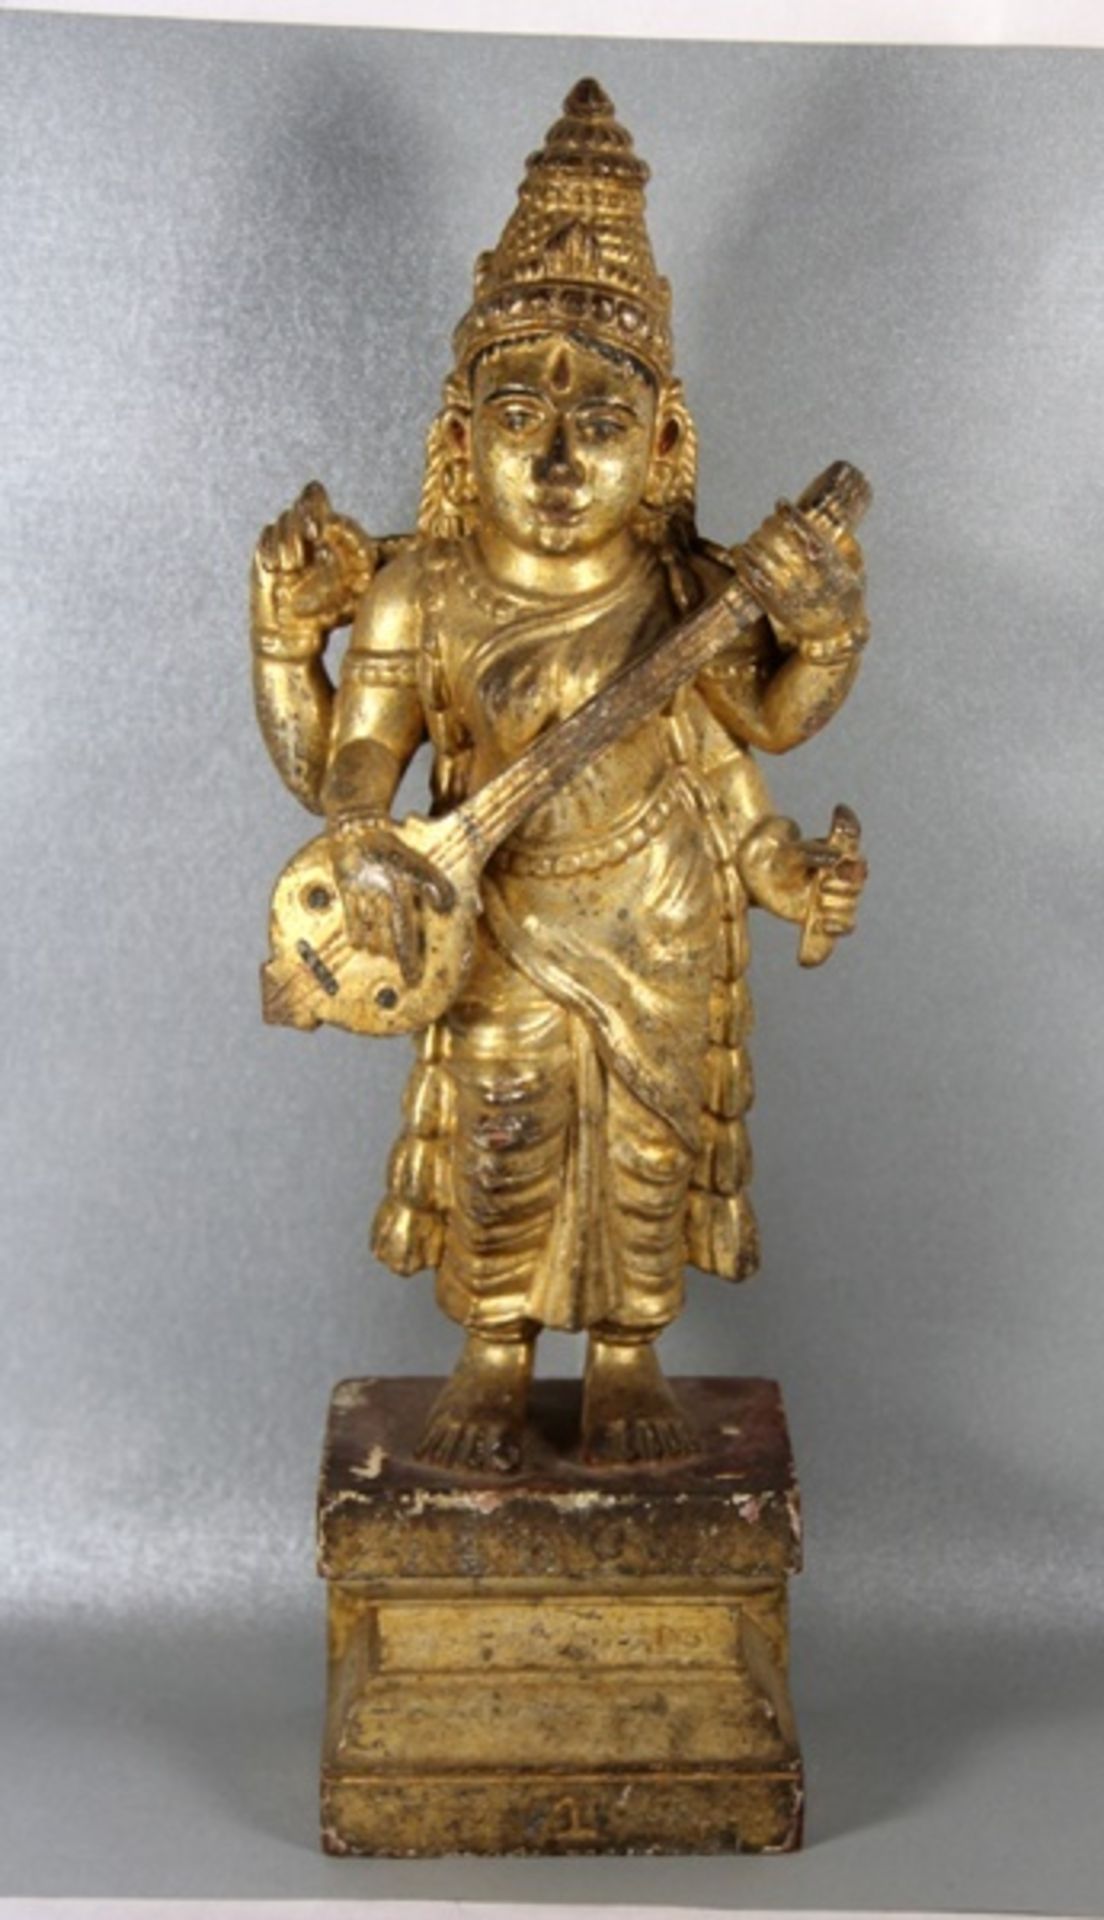 Saraswati-Holzskulpturwohl um 1900, Indien, geschitzt, goldfarben gefasste und partiell bemalte